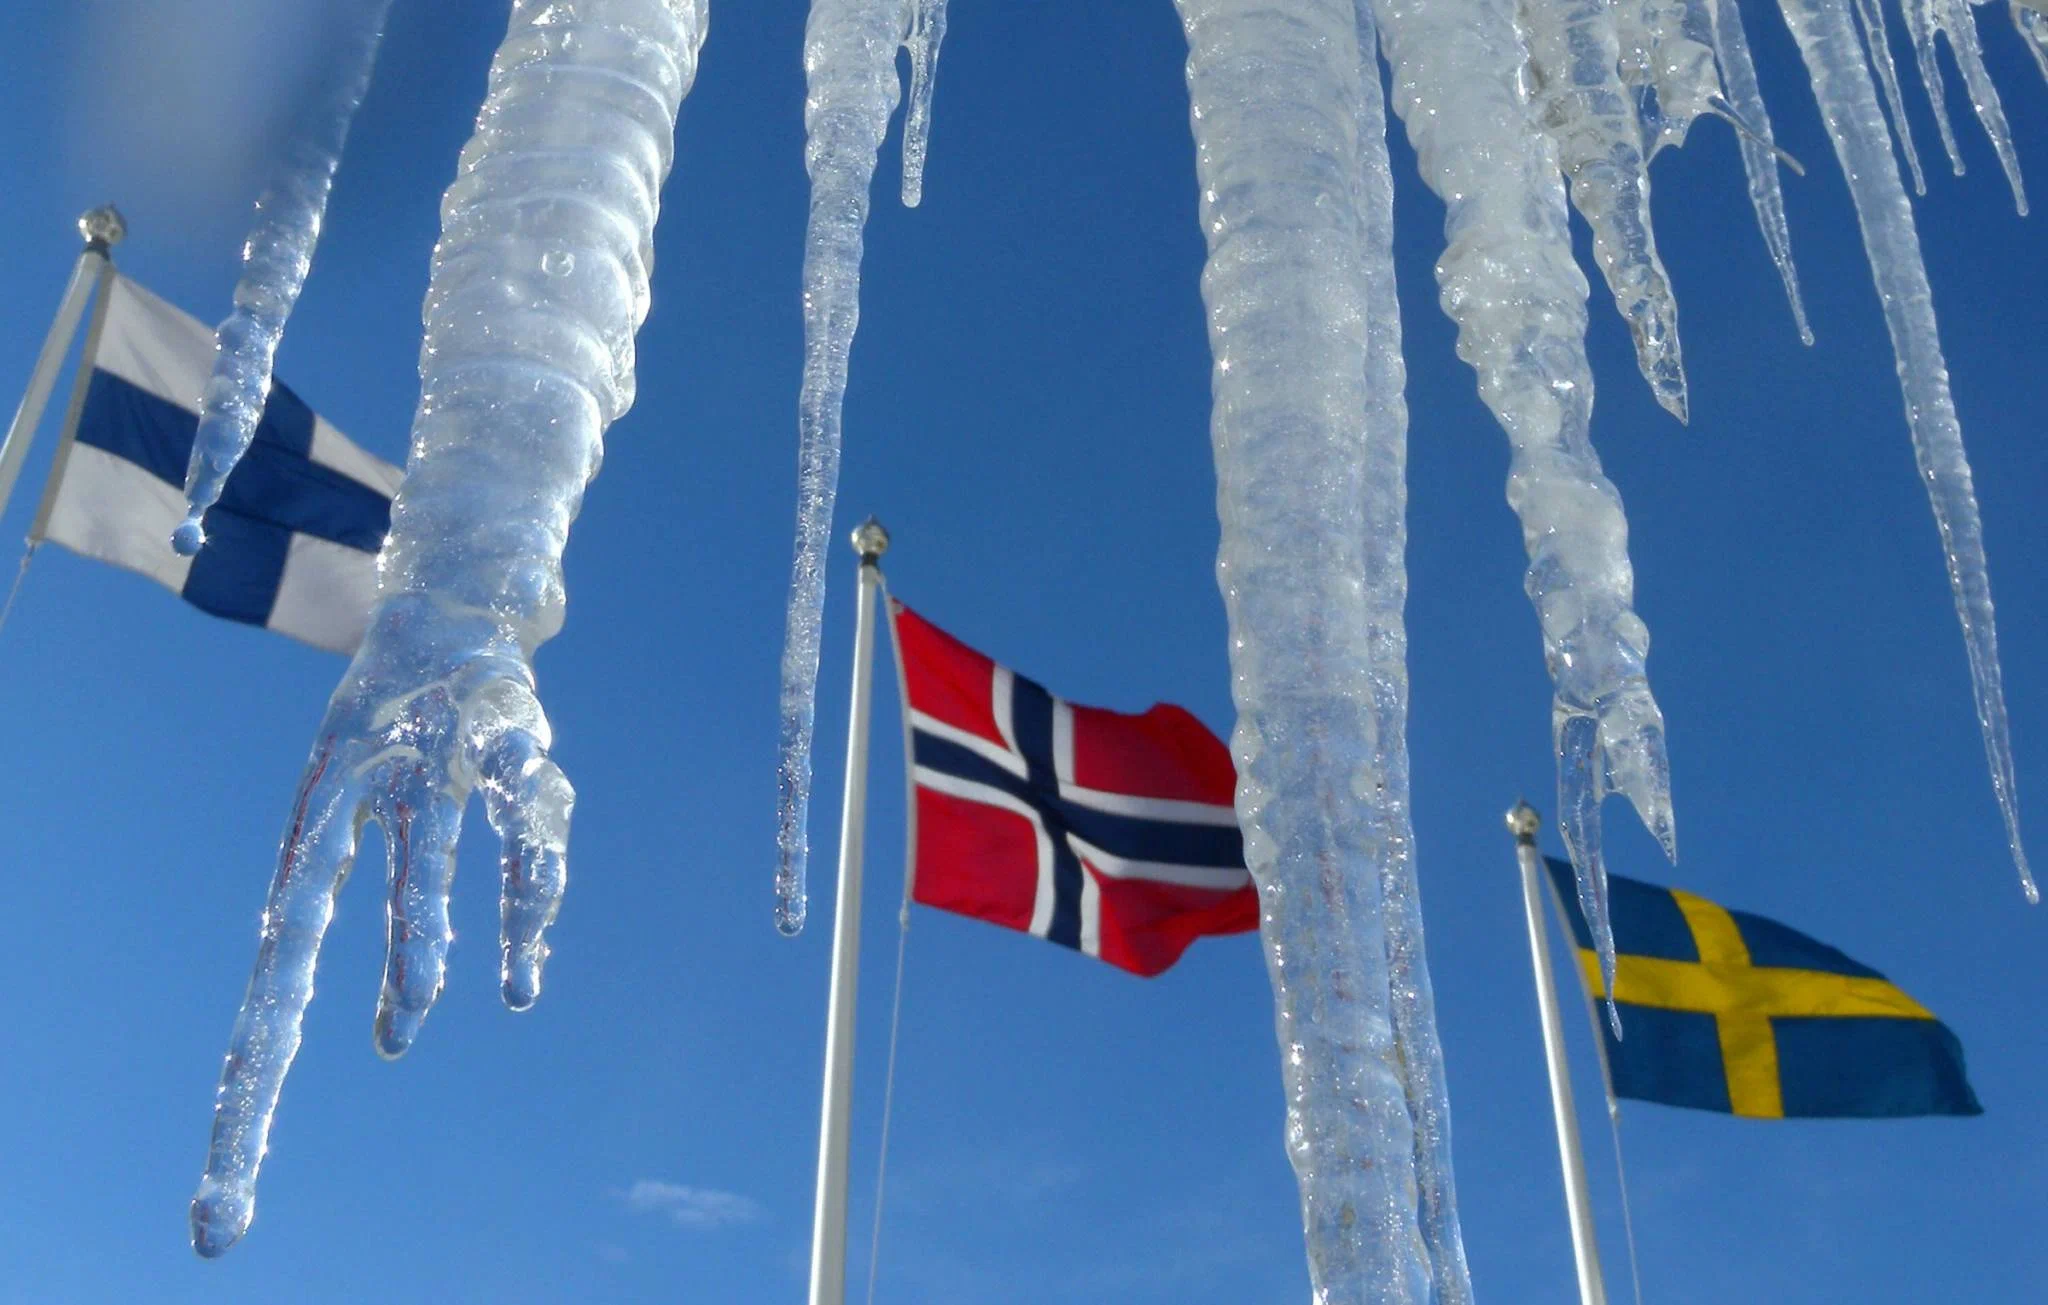 Группа северных стран. Флаг Швеции и Финляндии. Флаг Швеции Норвегии и Финляндии. Флаги Швеции Норвегии Финляндии Дании. Скандинавские страны Финляндия.